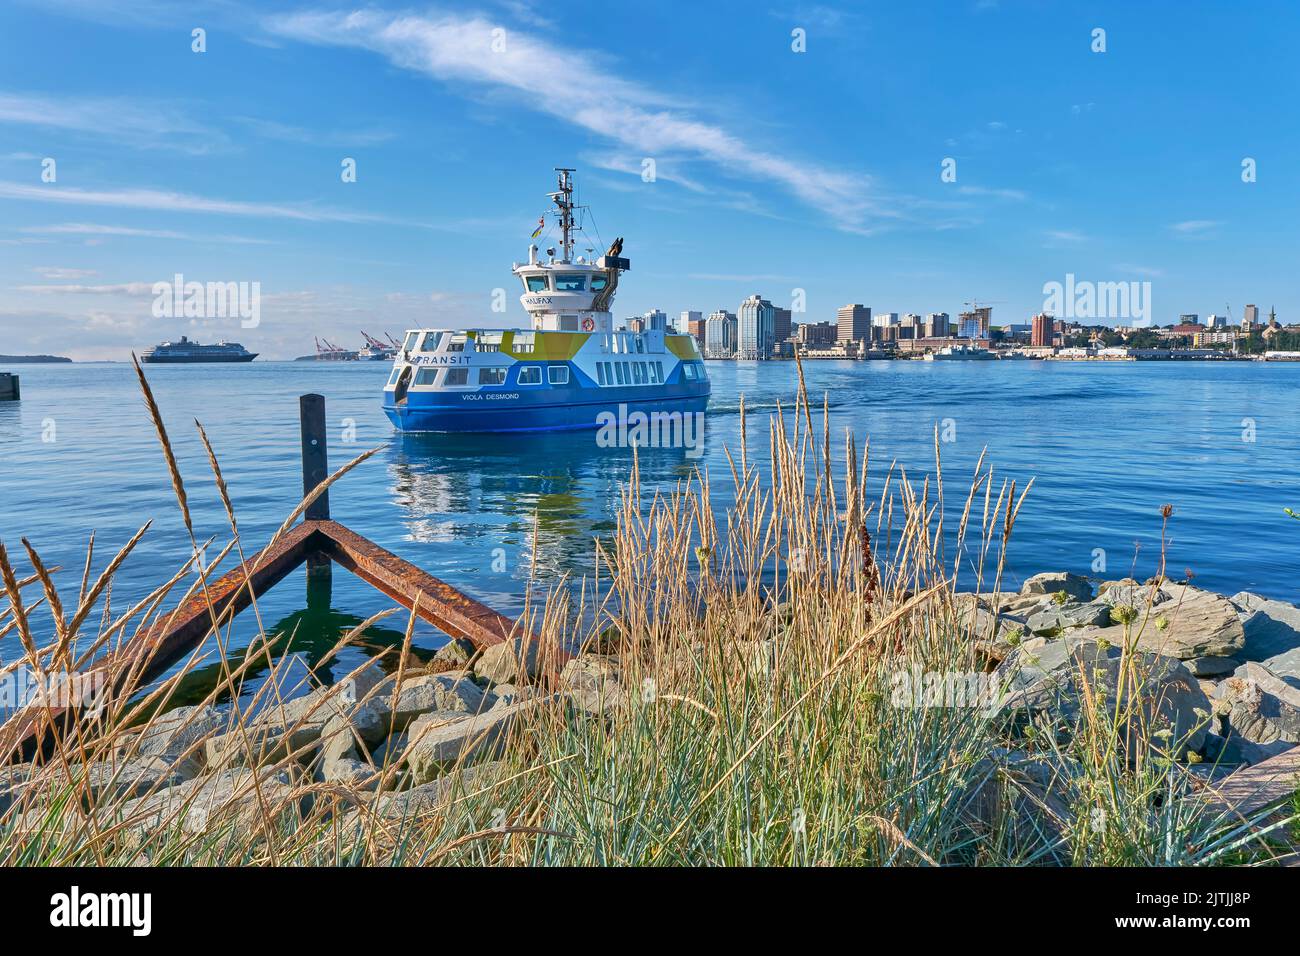 Il servizio di traghetto trasporta le persone dalla città di Dartmouth al lungomare di Halifax attraverso il porto di Halifax. Il servizio è gestito da Halifax Trans Foto Stock